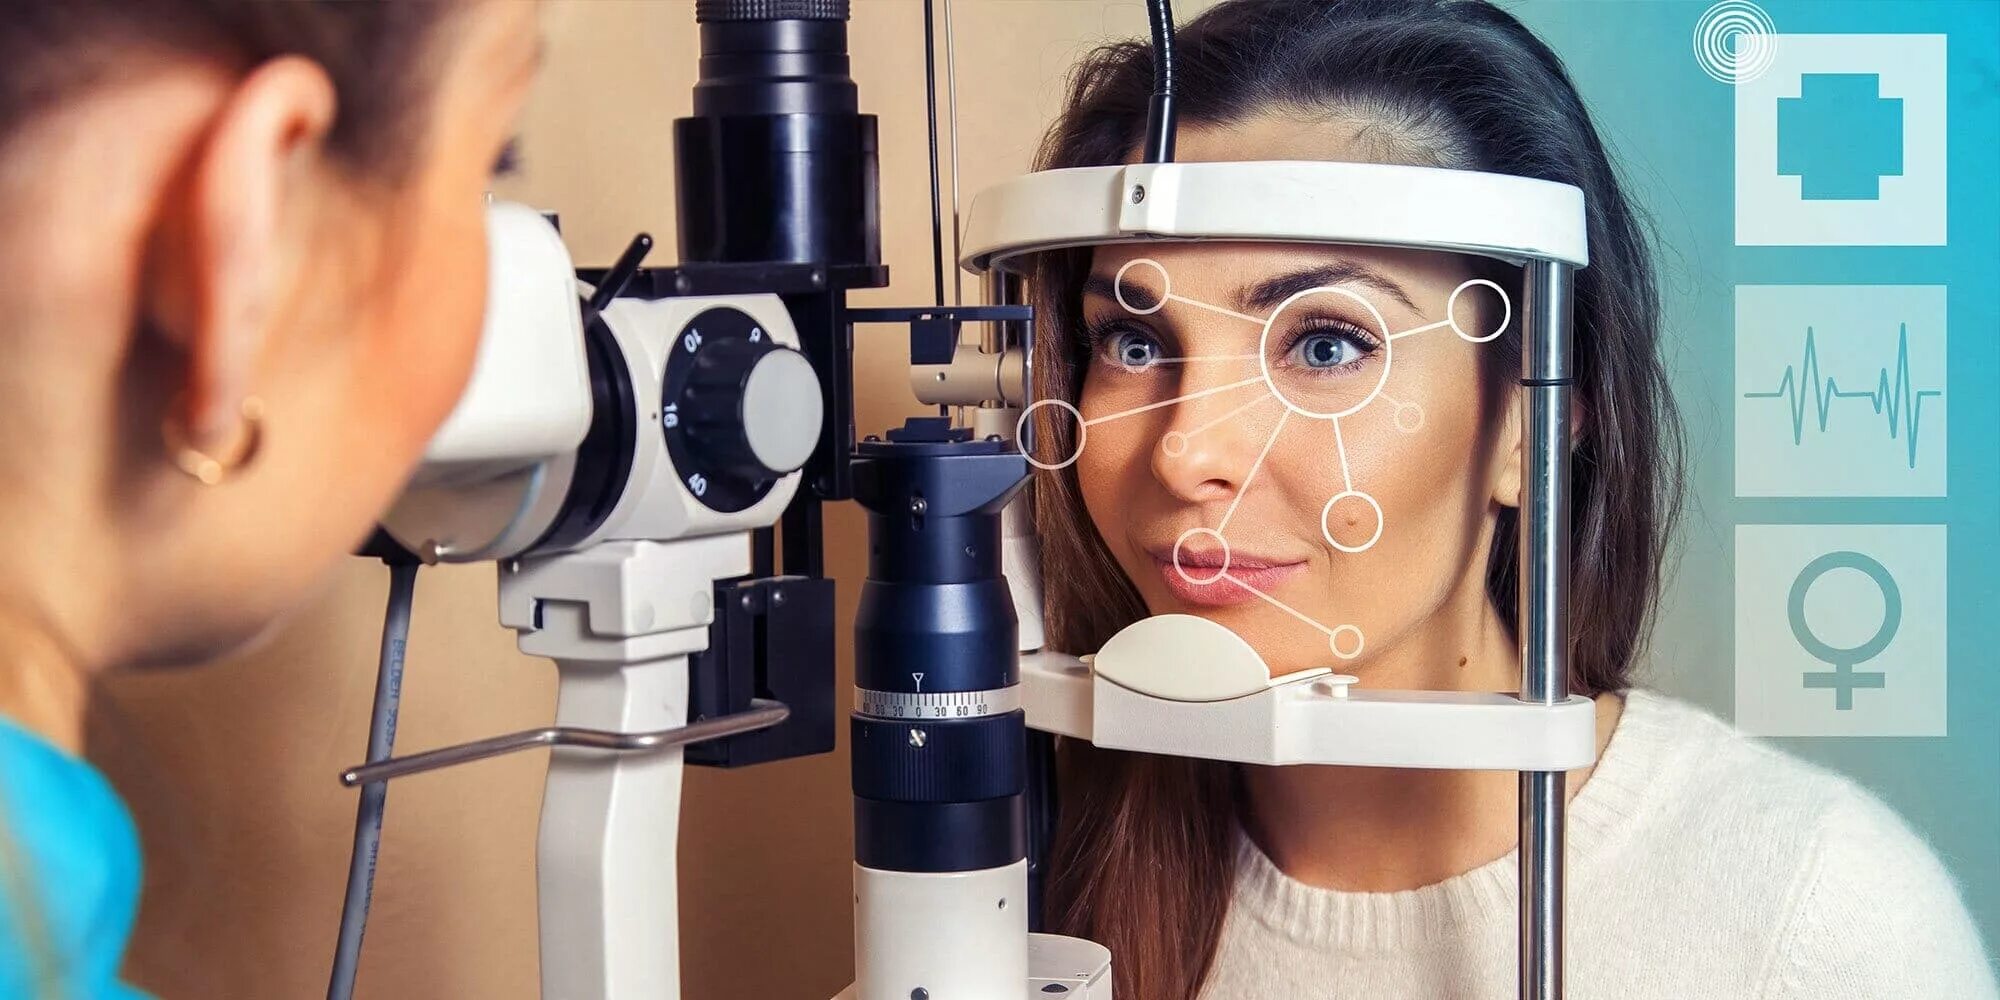 Глазки проверять. Прибор для осмотра глаз. Реабилитация в офтальмологии. Аппарат для проверки глаз. Комплексное обследование зрения.